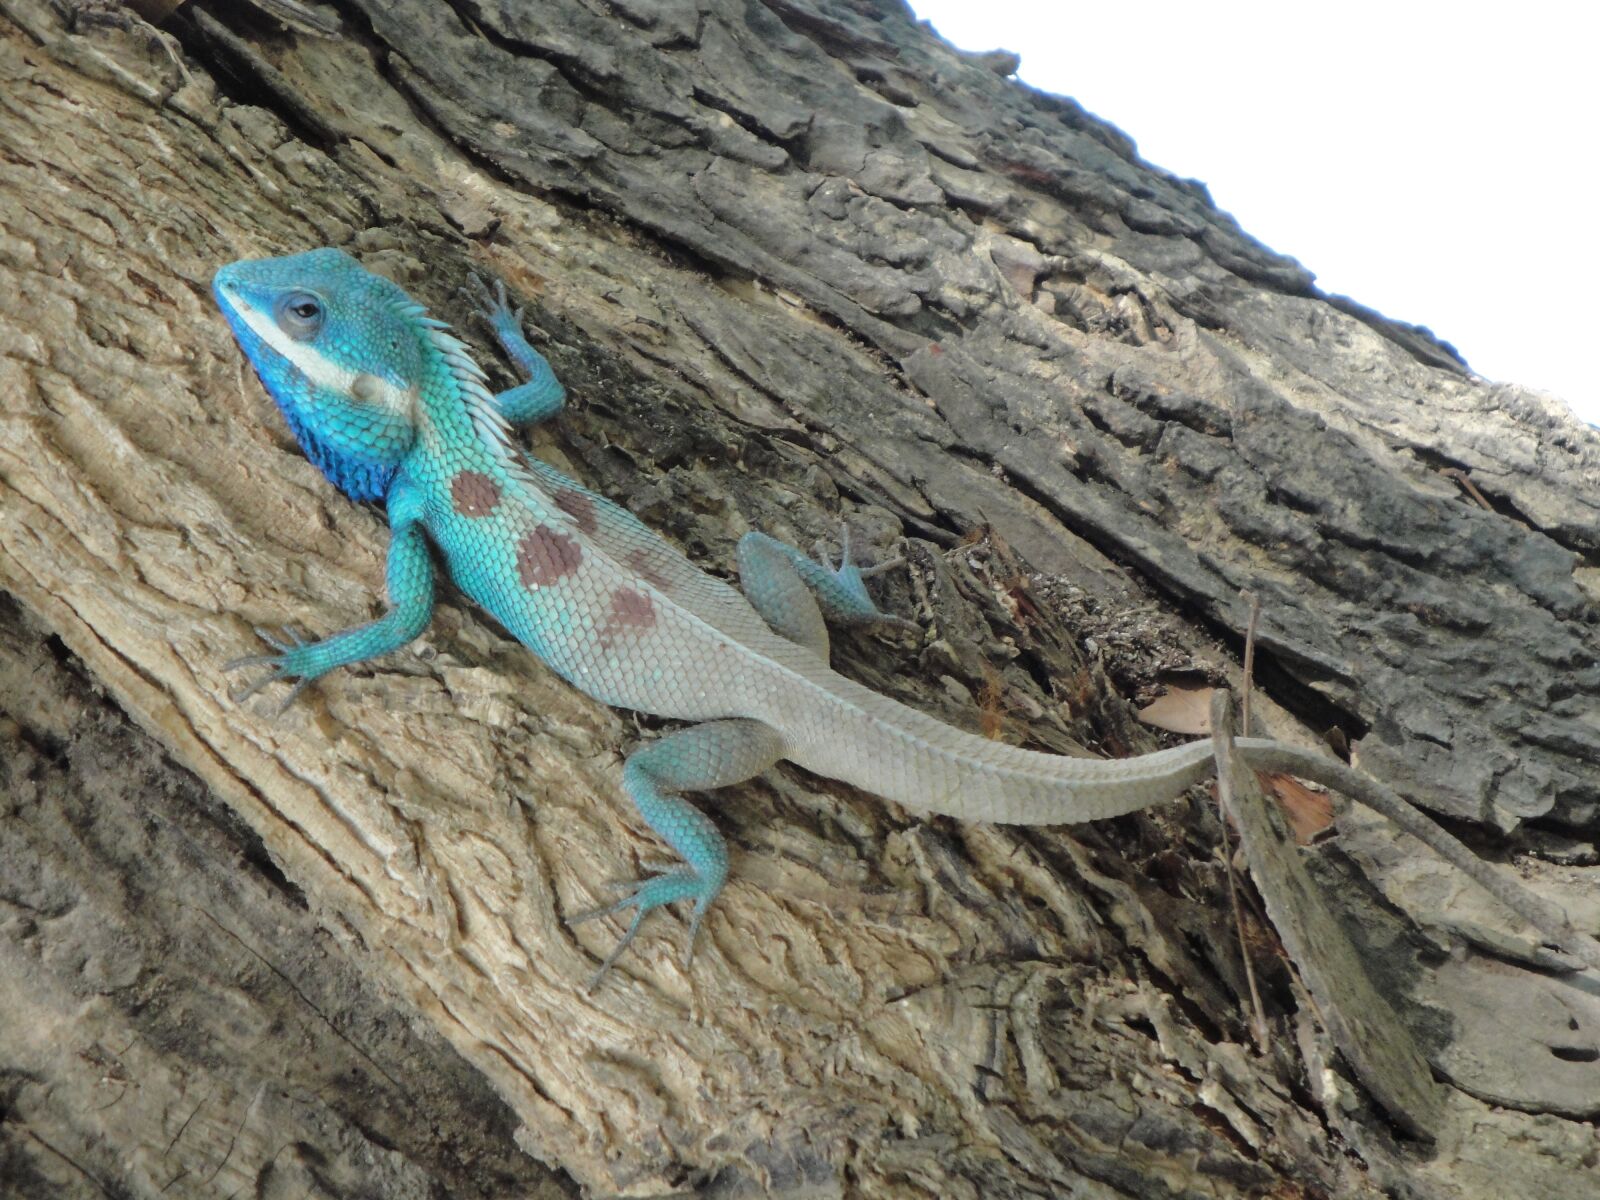 Sony Cyber-shot DSC-W290 sample photo. Tree lizard, animal, iguana photography